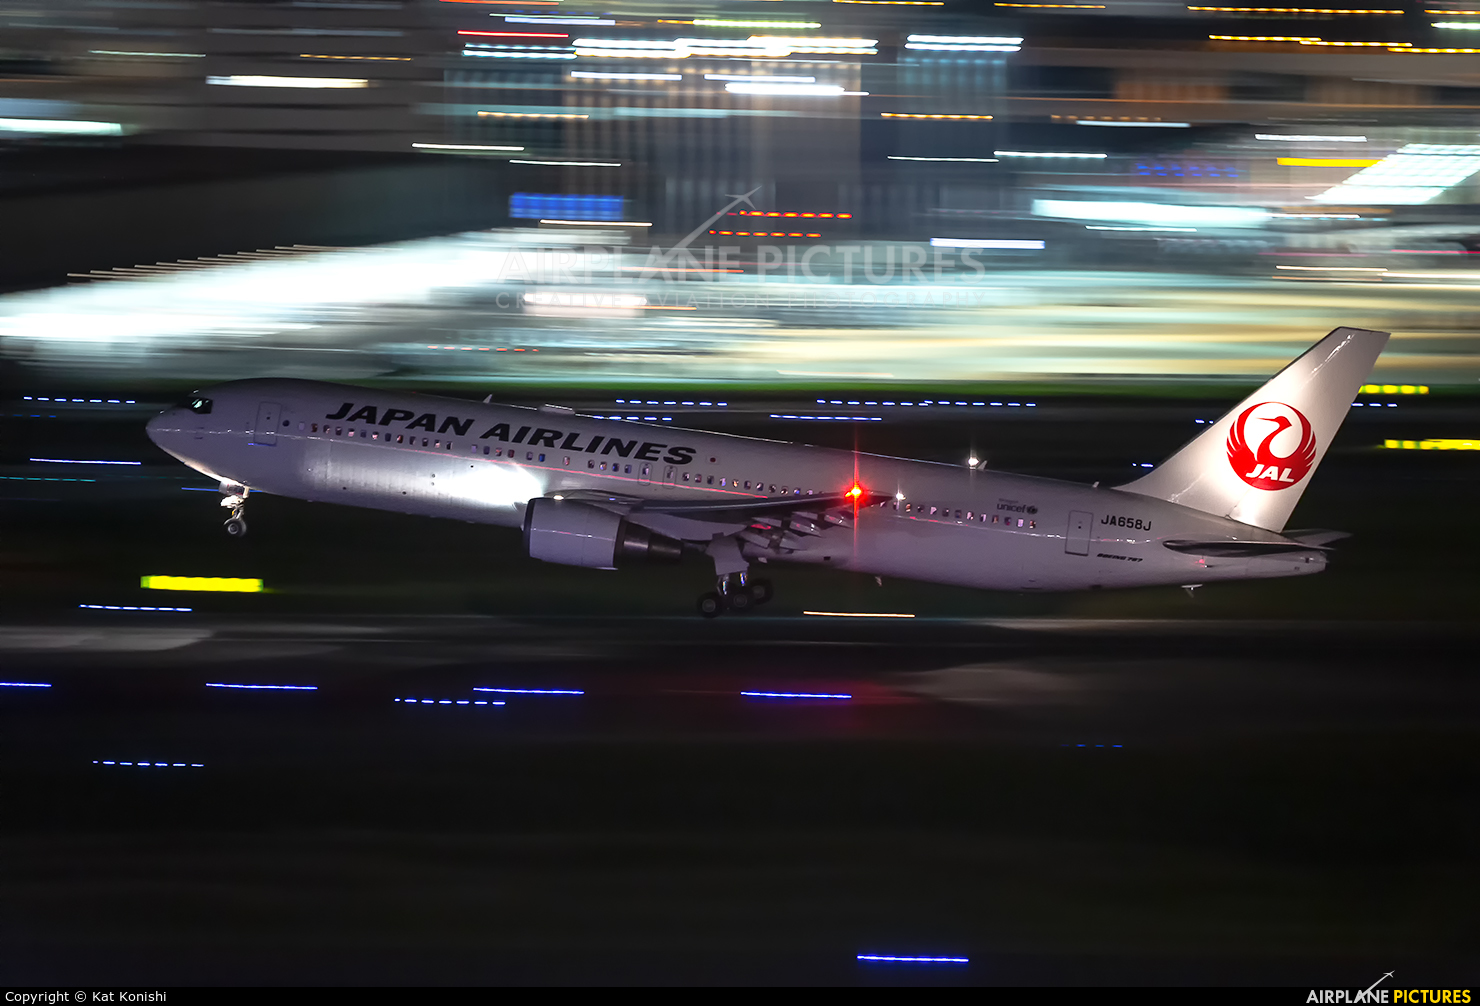 JAL - Japan Airlines JA658J aircraft at Tokyo - Haneda Intl